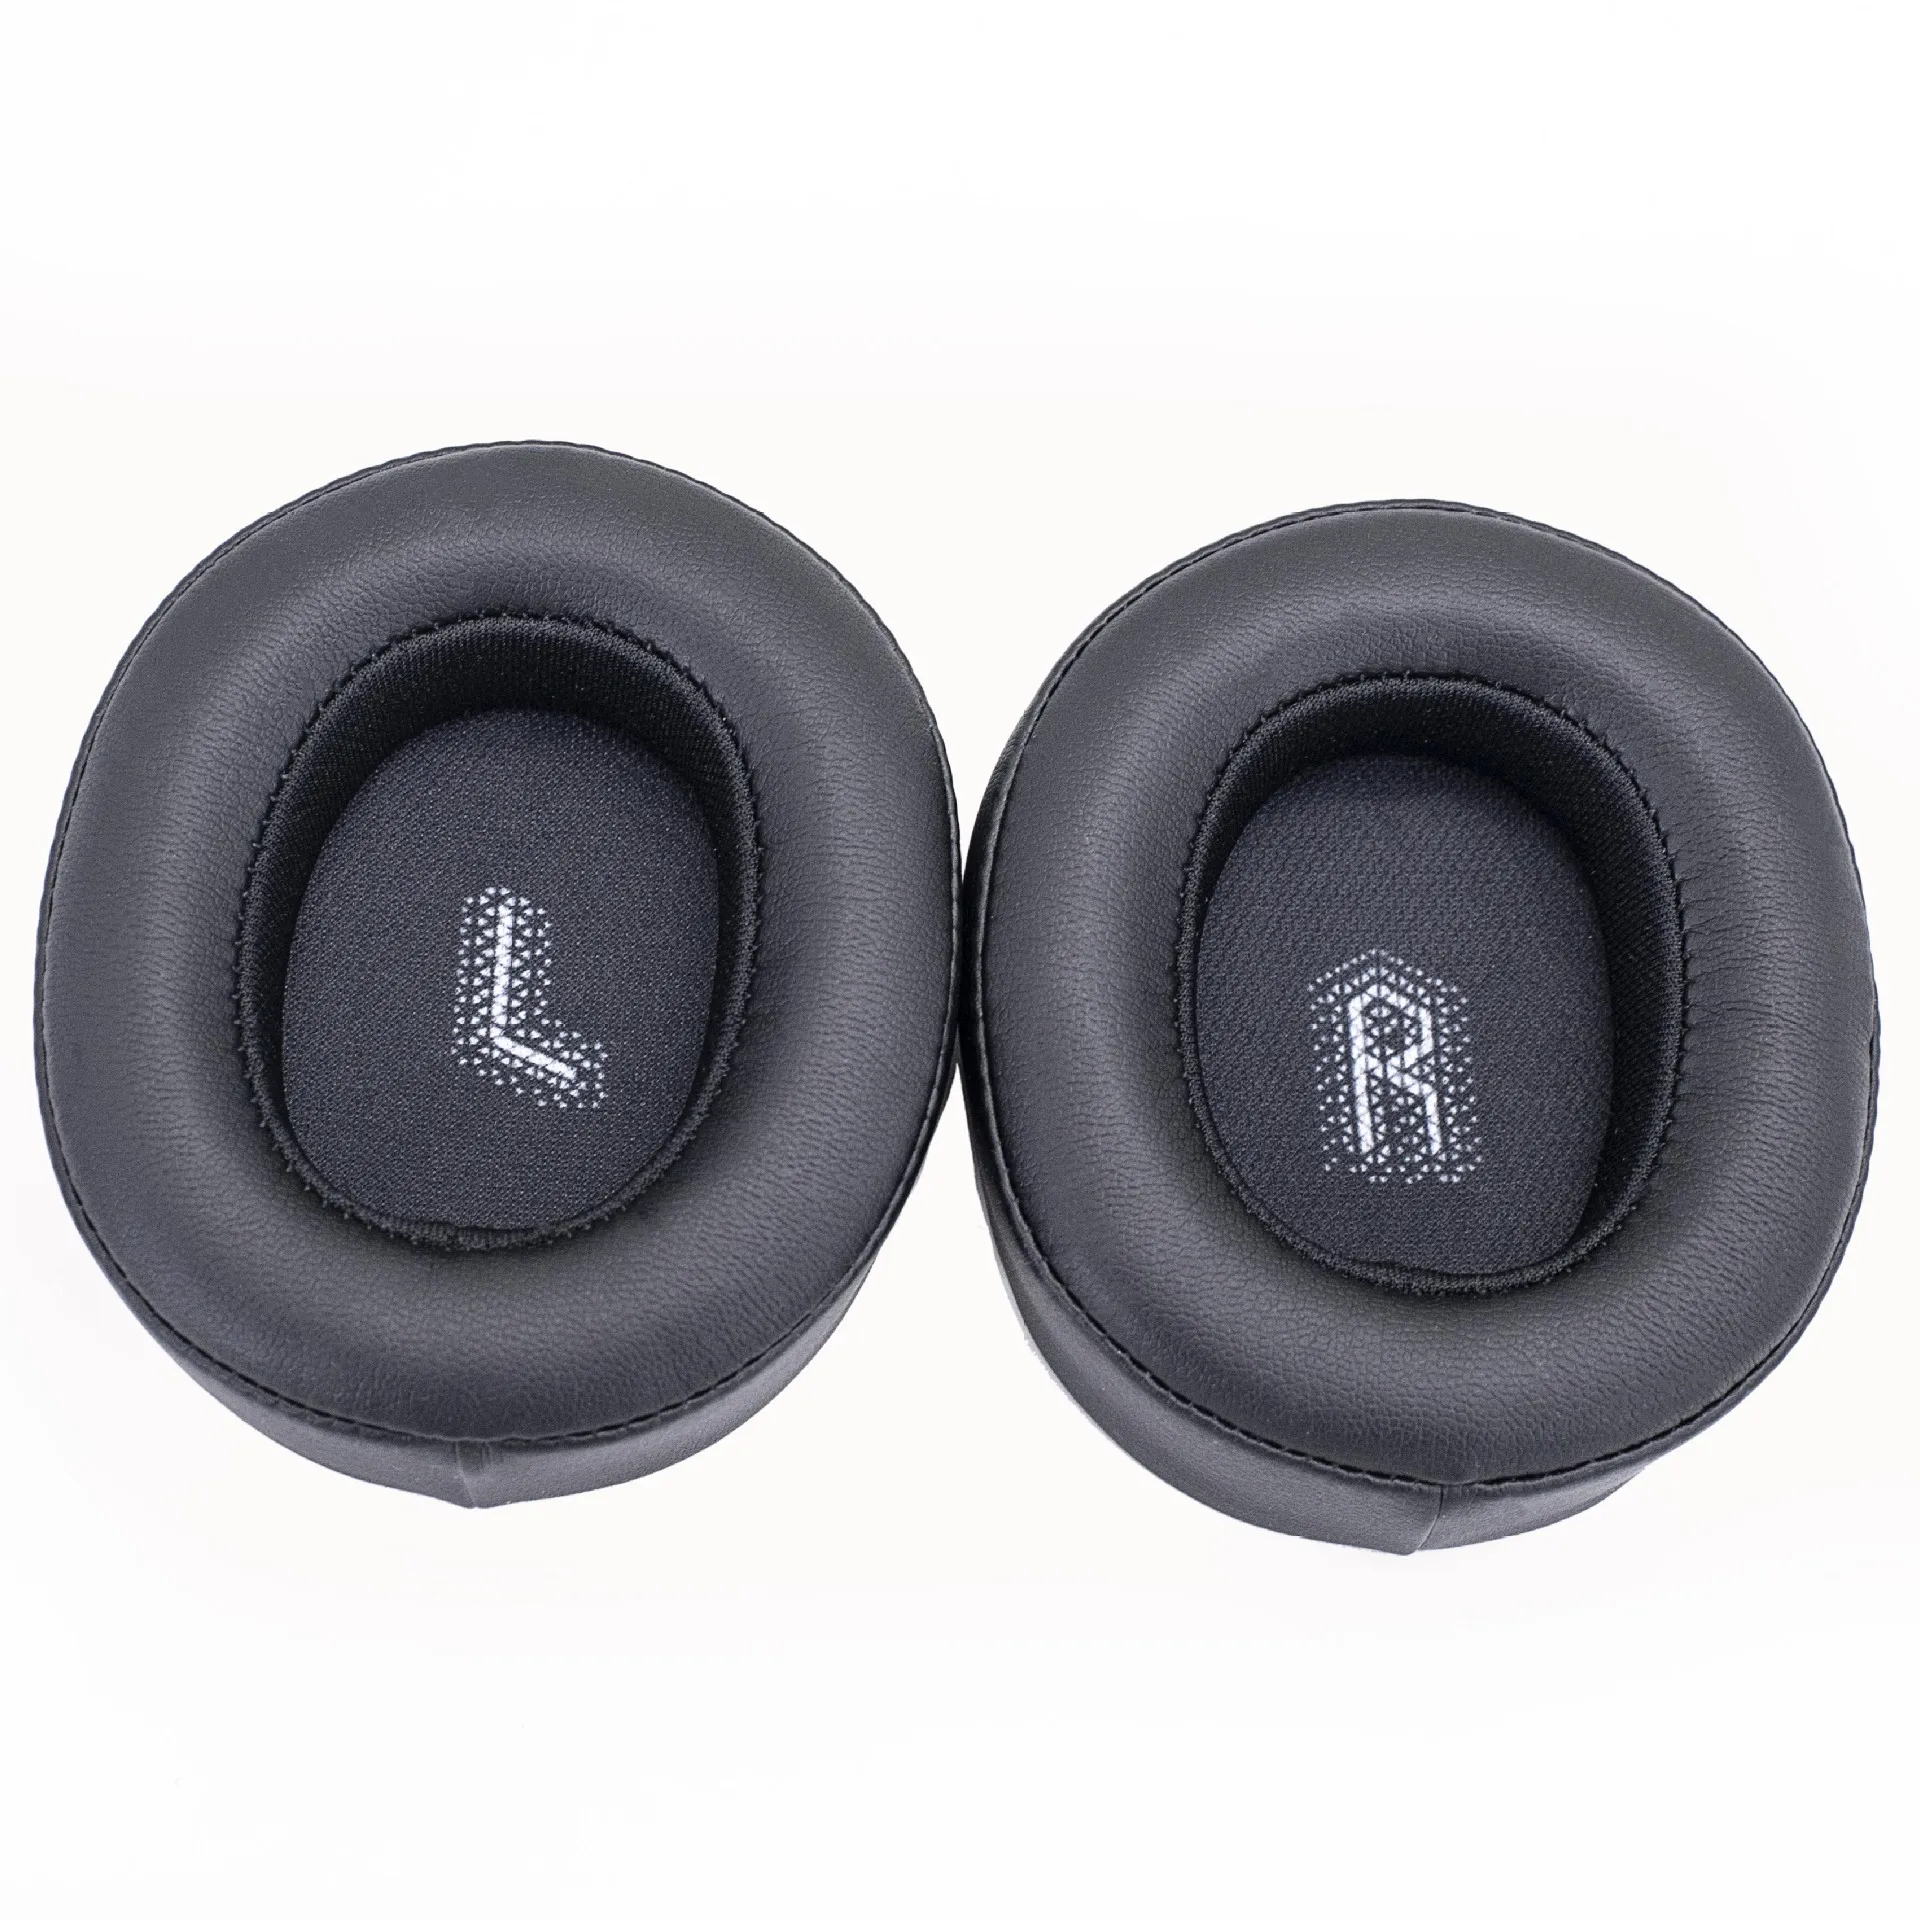 New Ear Pads Cushion Replacement JBL E55BT/E 55 BT/E55 BT Headphone Memory Foam Earpads Soft Protein Earmuffs